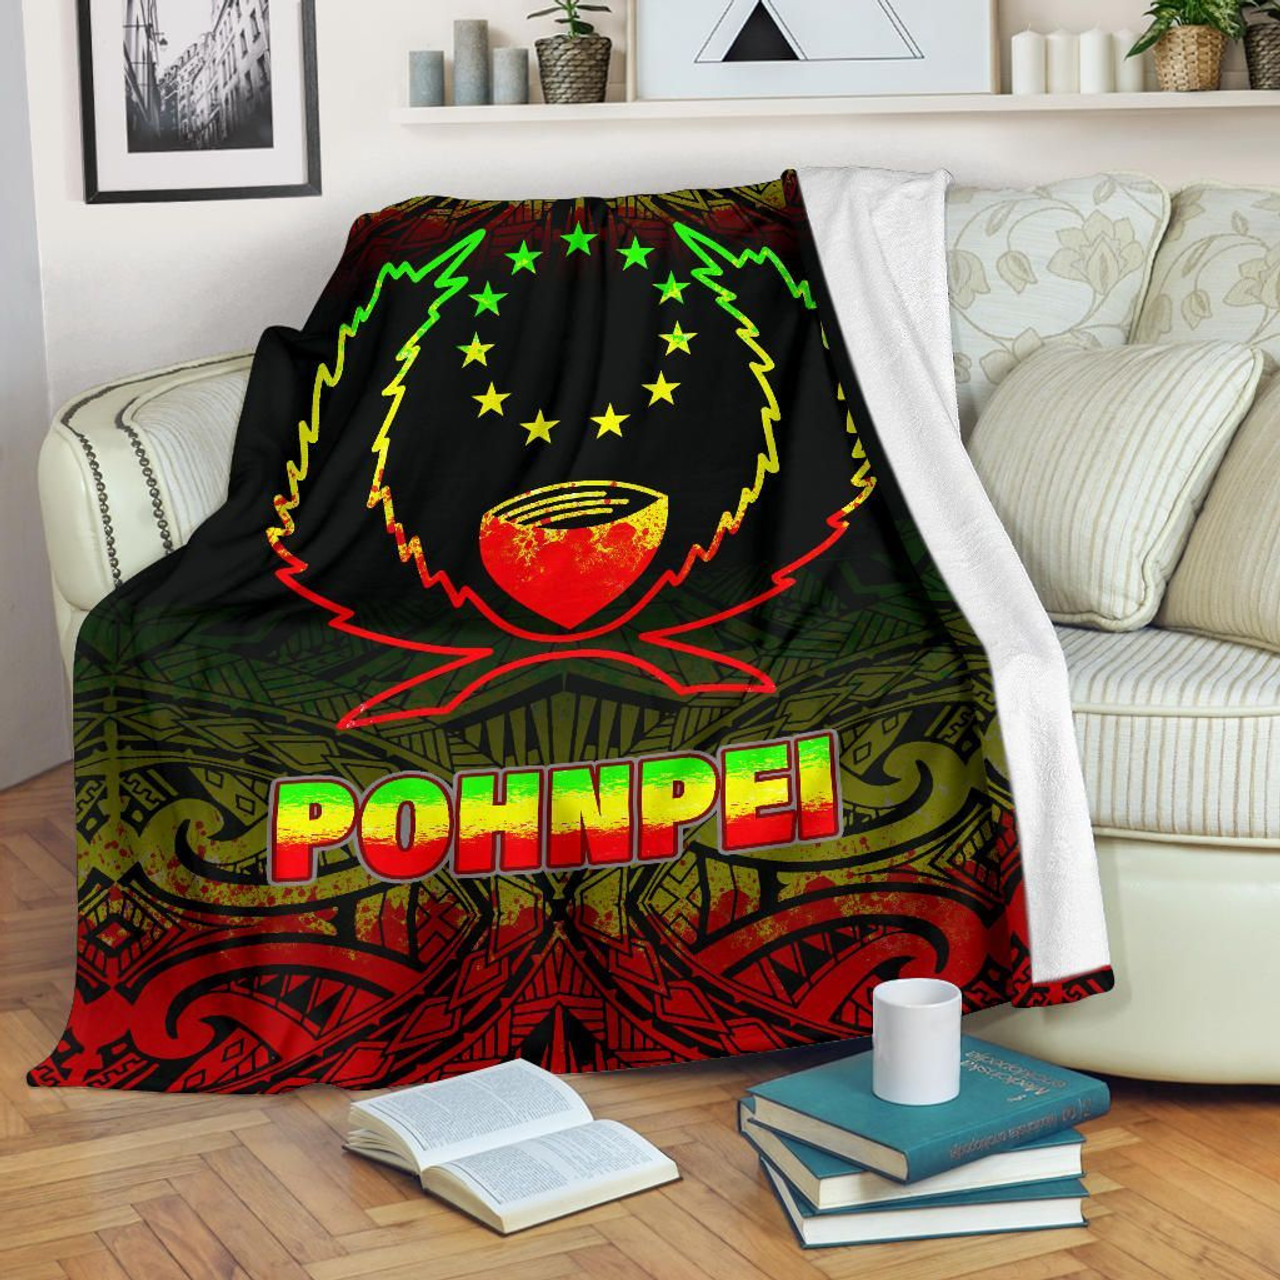 Pohnpei Premium Blanket - Reggae Fog Style 1